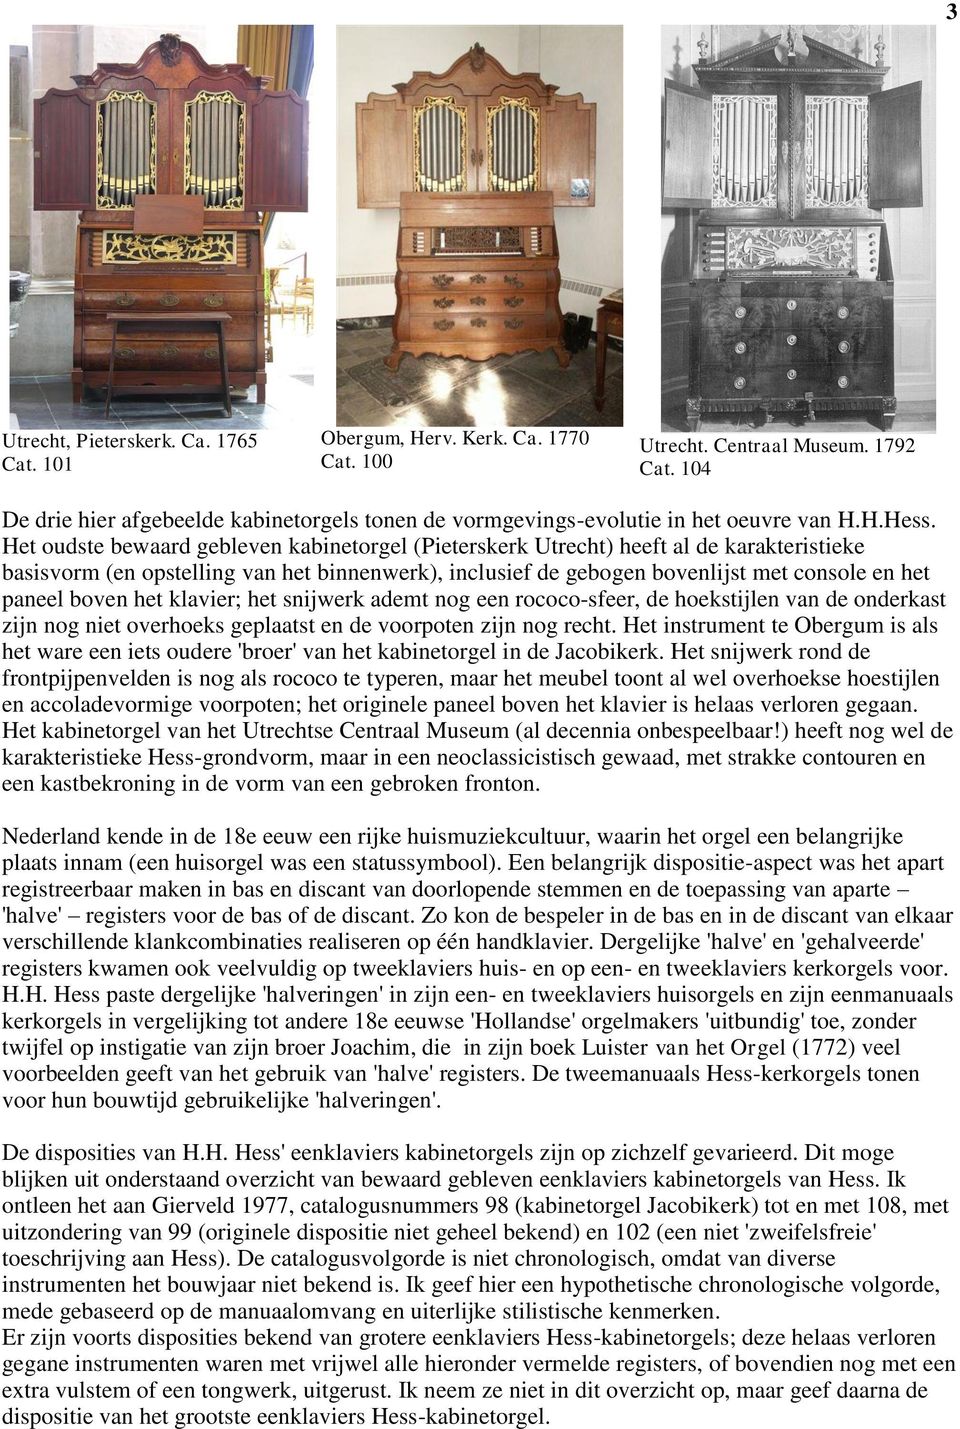 Het oudste bewaard gebleven kabinetorgel (Pieterskerk Utrecht) heeft al de karakteristieke basisvorm (en opstelling van het binnenwerk), inclusief de gebogen bovenlijst met console en het paneel